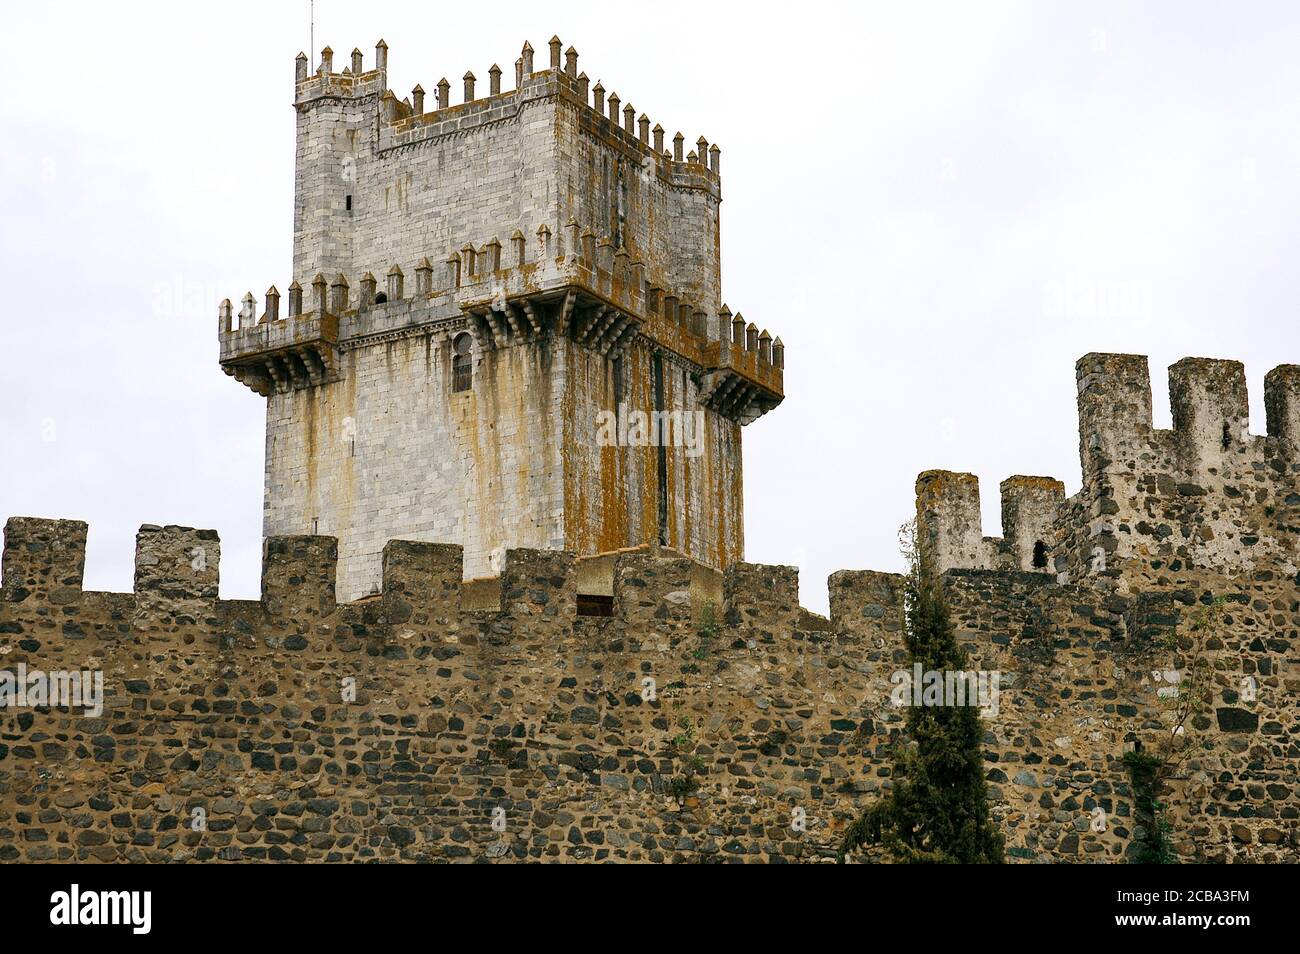 Portugal, Alentejo, Beja. Castillo. Vista de la torre de mantenimiento. El rey Dinis de Portugal (1261-1325) reforzó y amplió las paredes y torres (1307) y comenzó la construcción de la torre en 1310. Detalle arquitectónico. Foto de stock